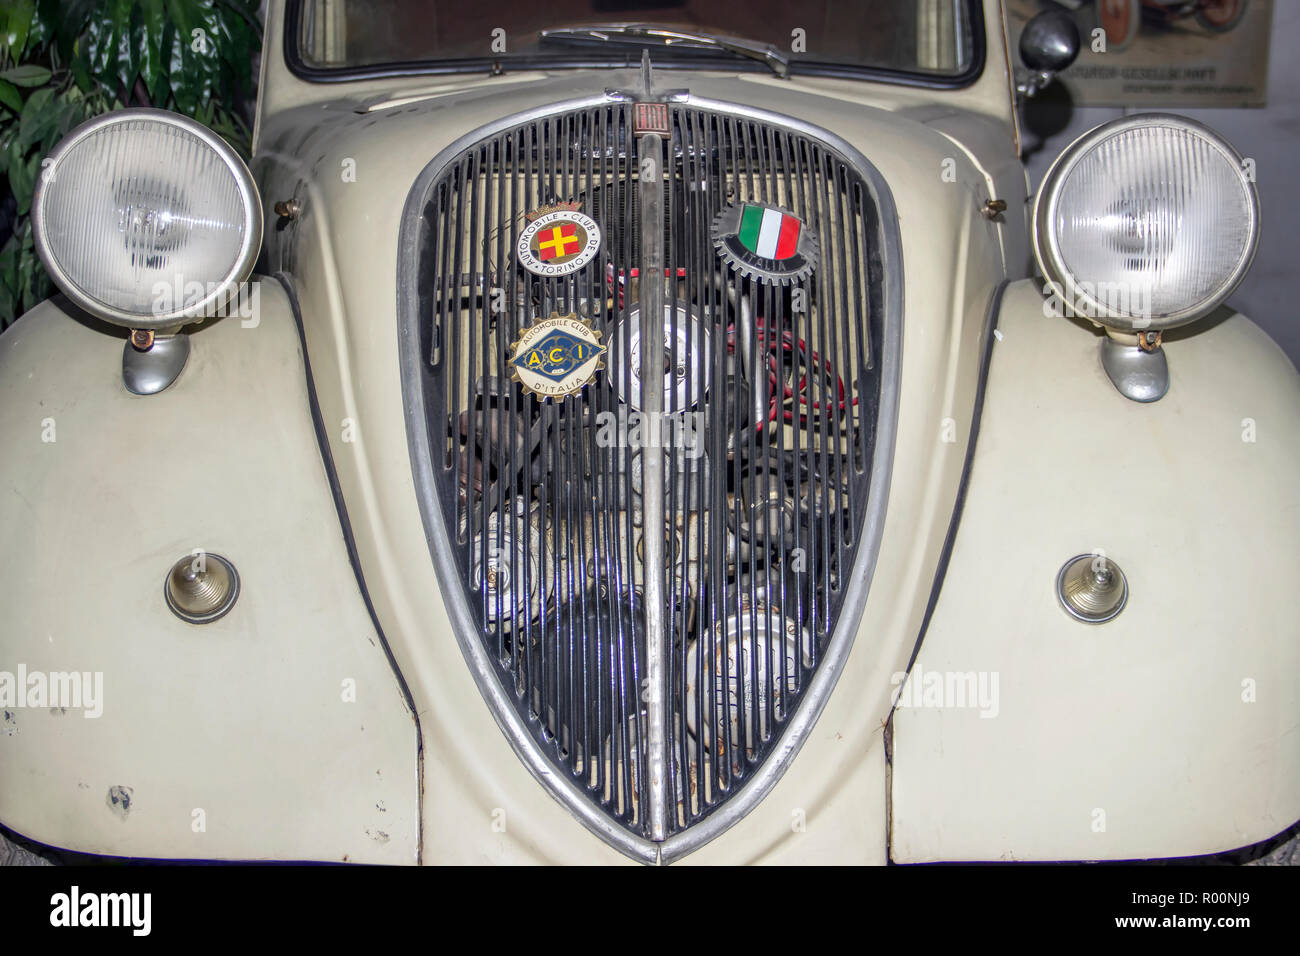 Das Automobilmuseum, Belgrad, Serbien - Vintage Fiat 500 allgemein bekannt als "Topolino" (1937) von der außergewöhnlichen Sammlung von bratislav Petkovic Stockfoto